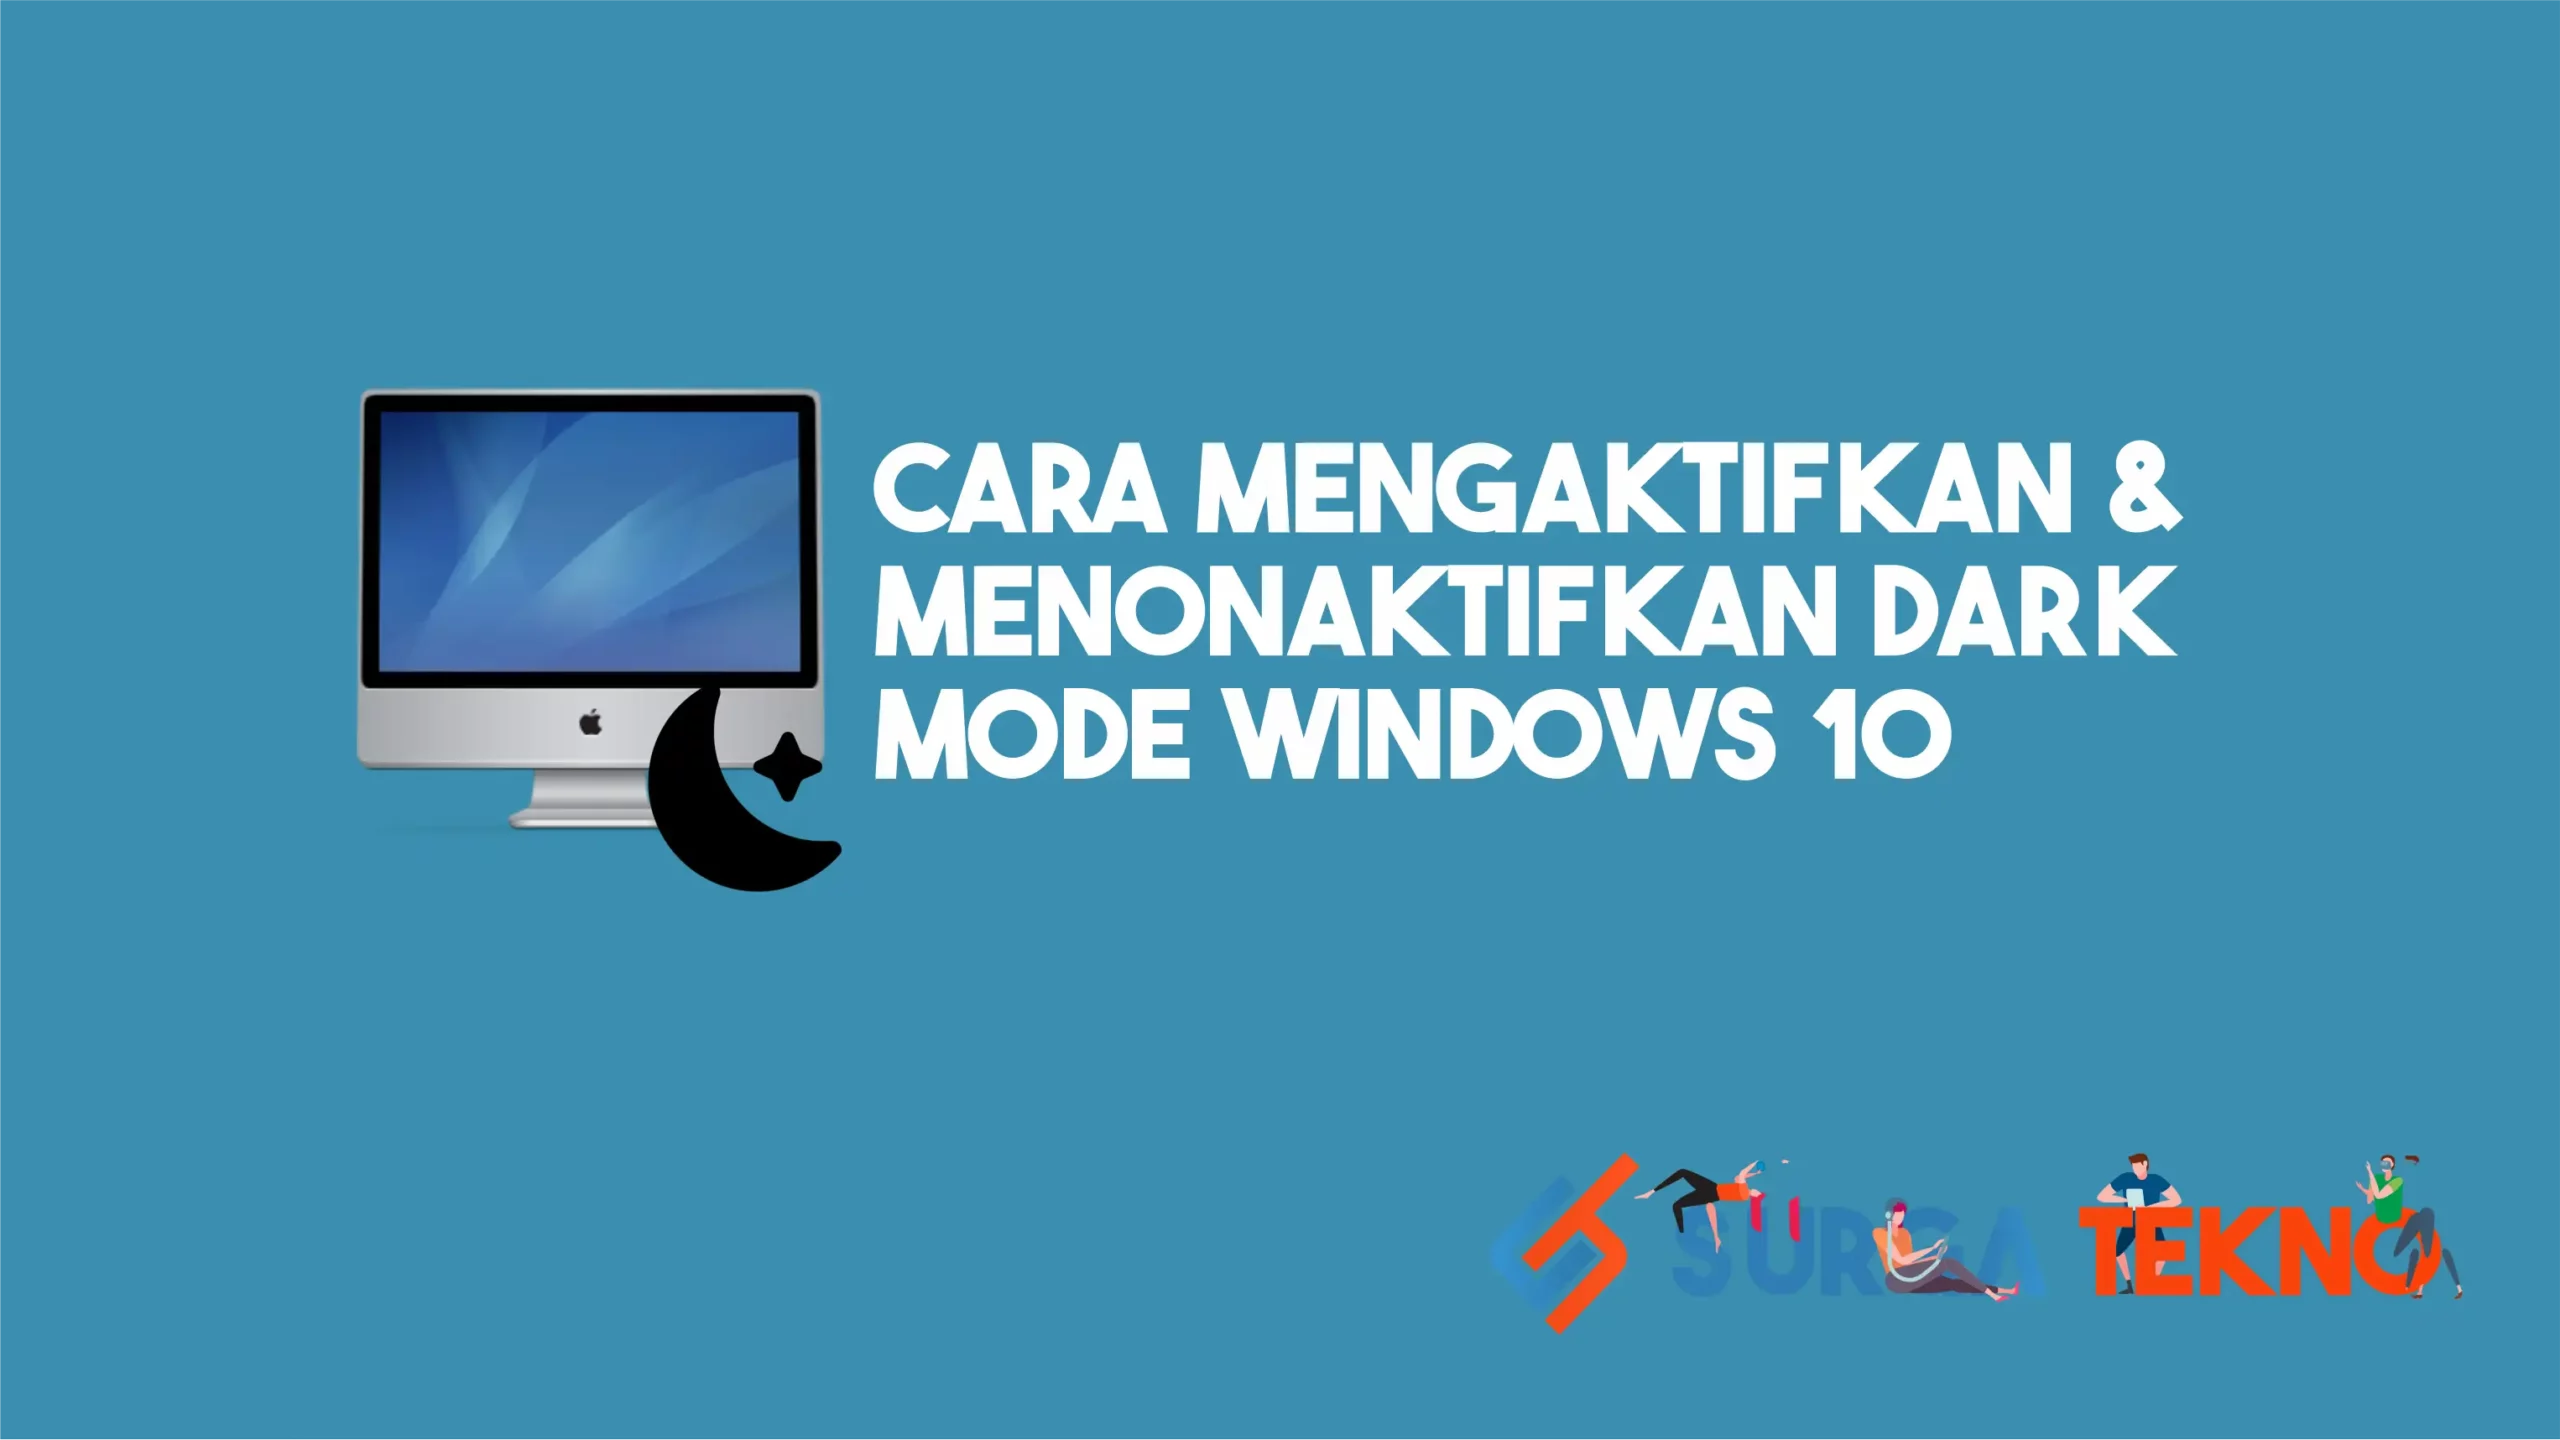 Cara Mengaktifkan & Menonaktifkan Dark Mode Windows 10